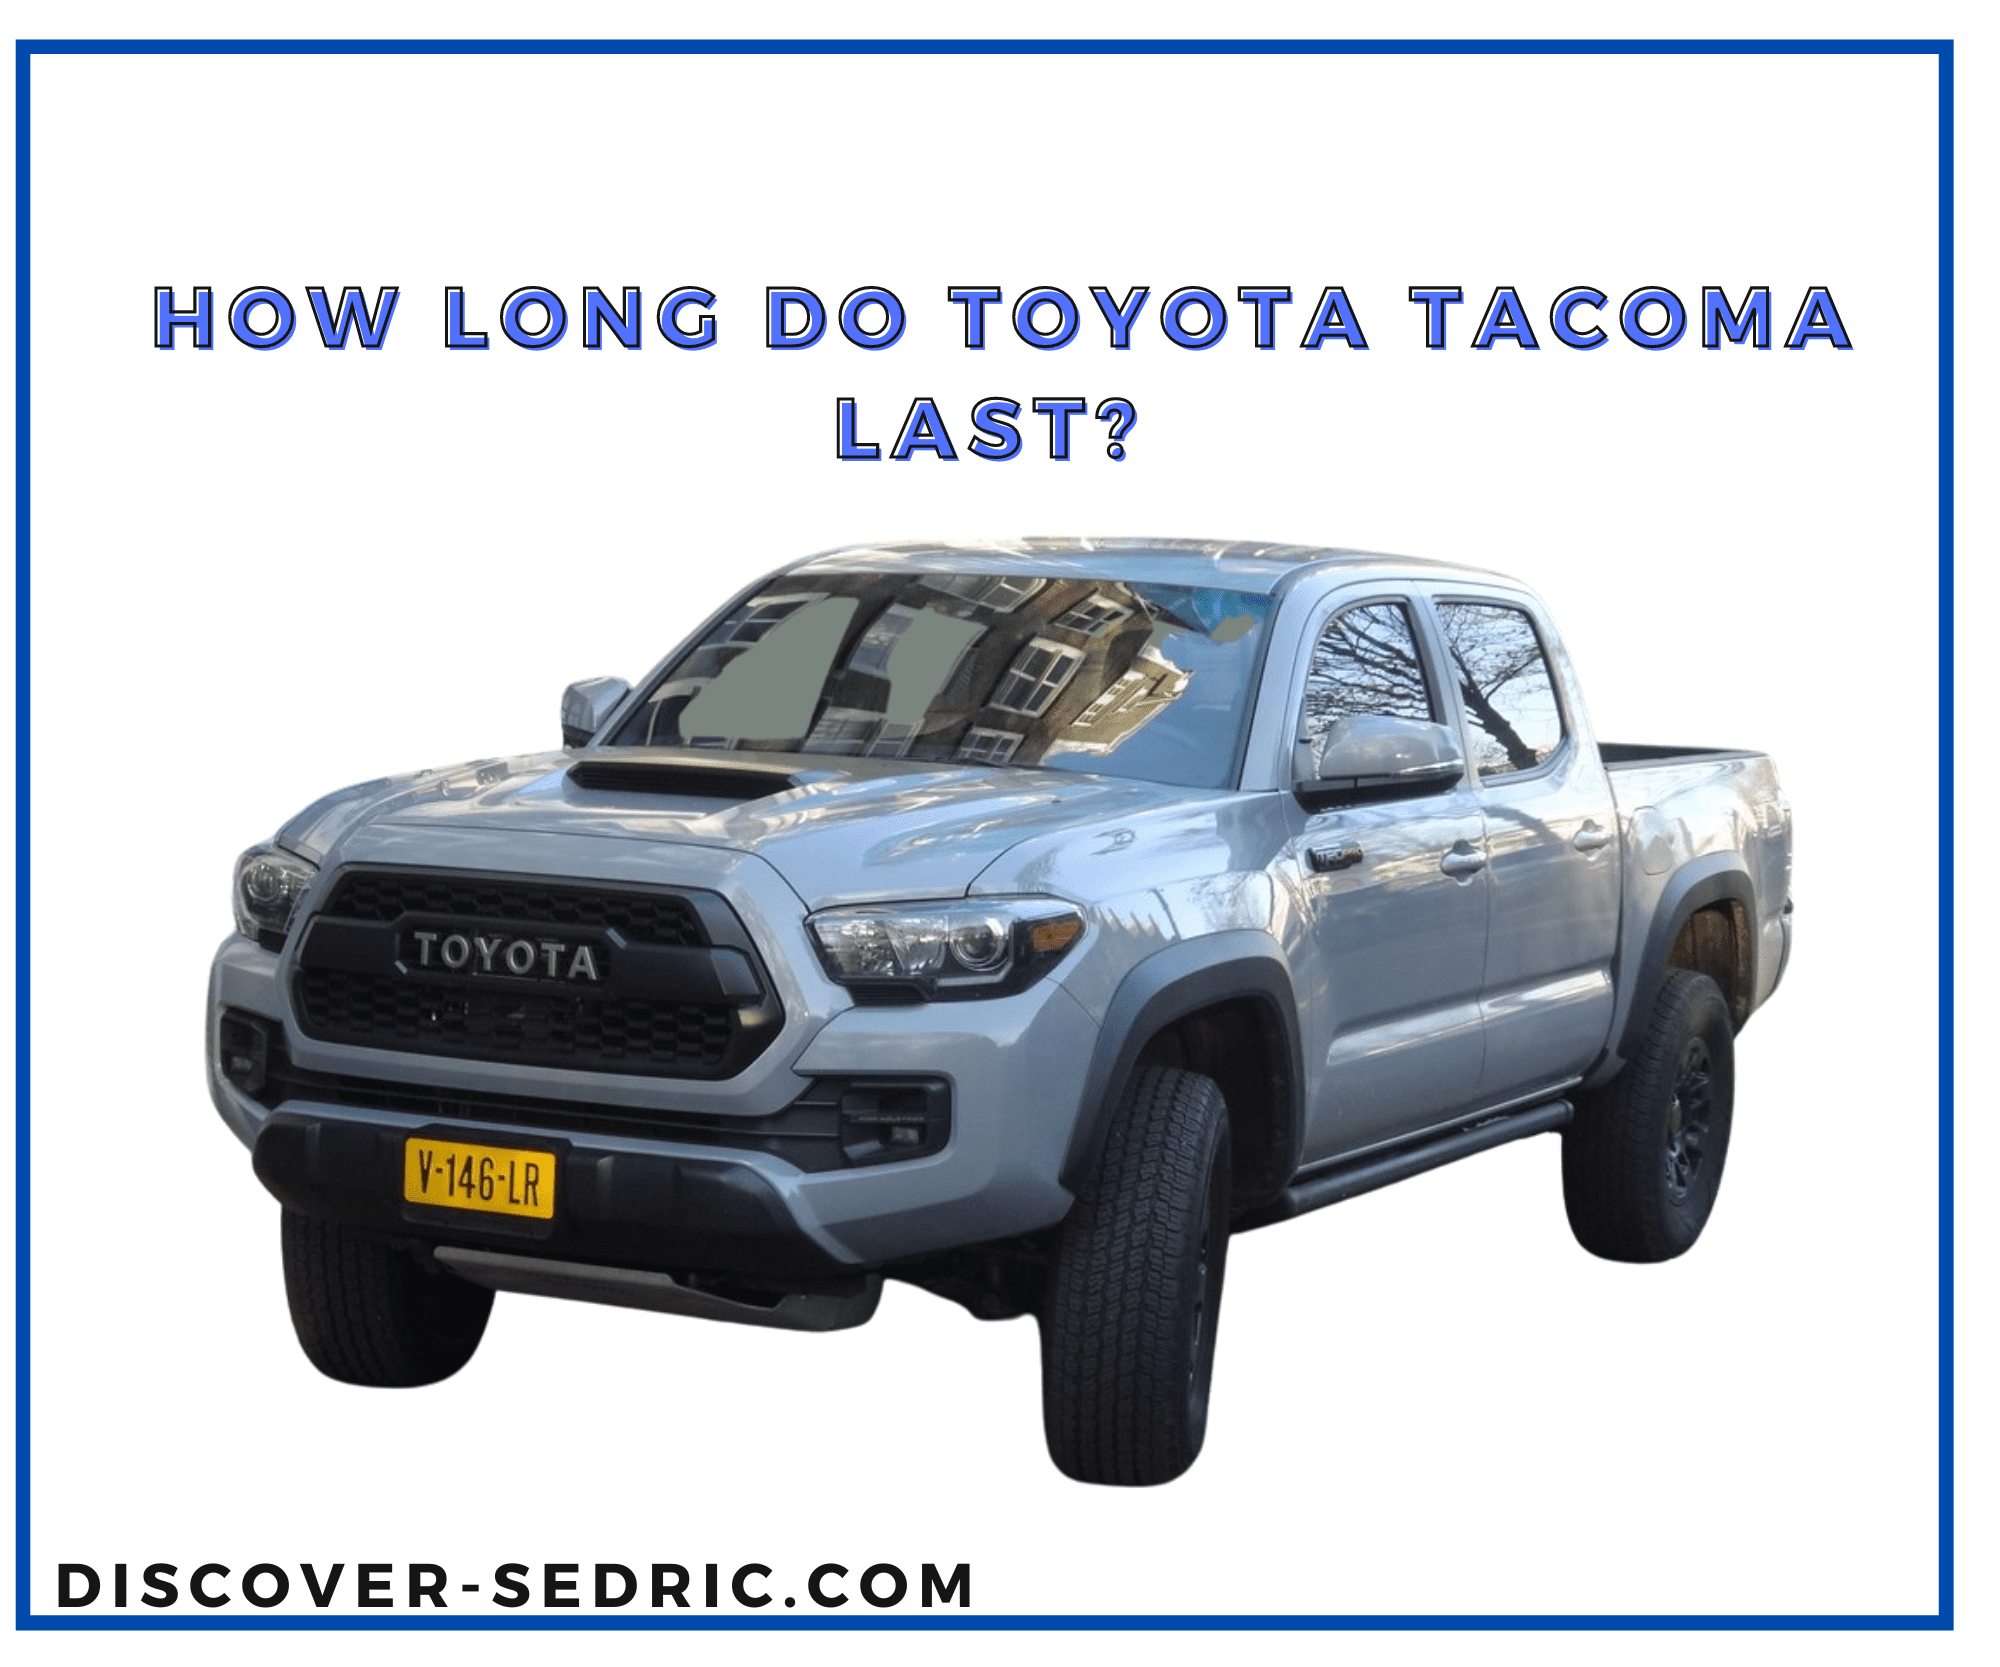 Toyota tacoma last